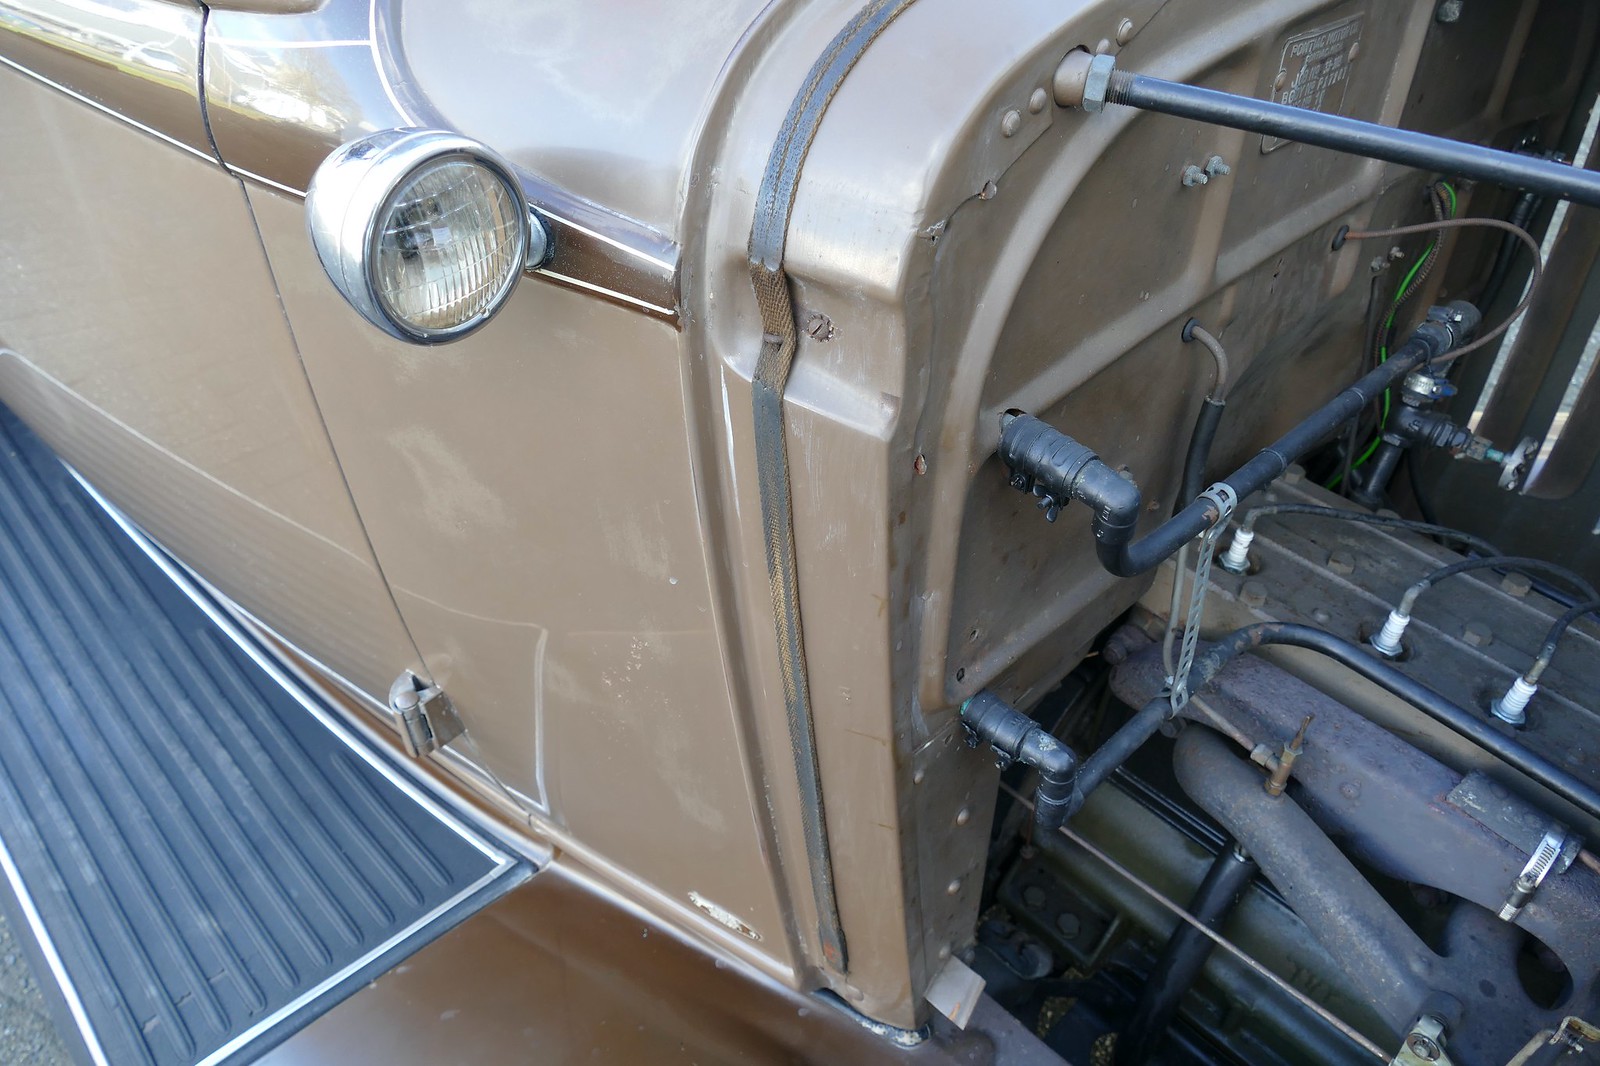 Pontiac eight sedan 1933